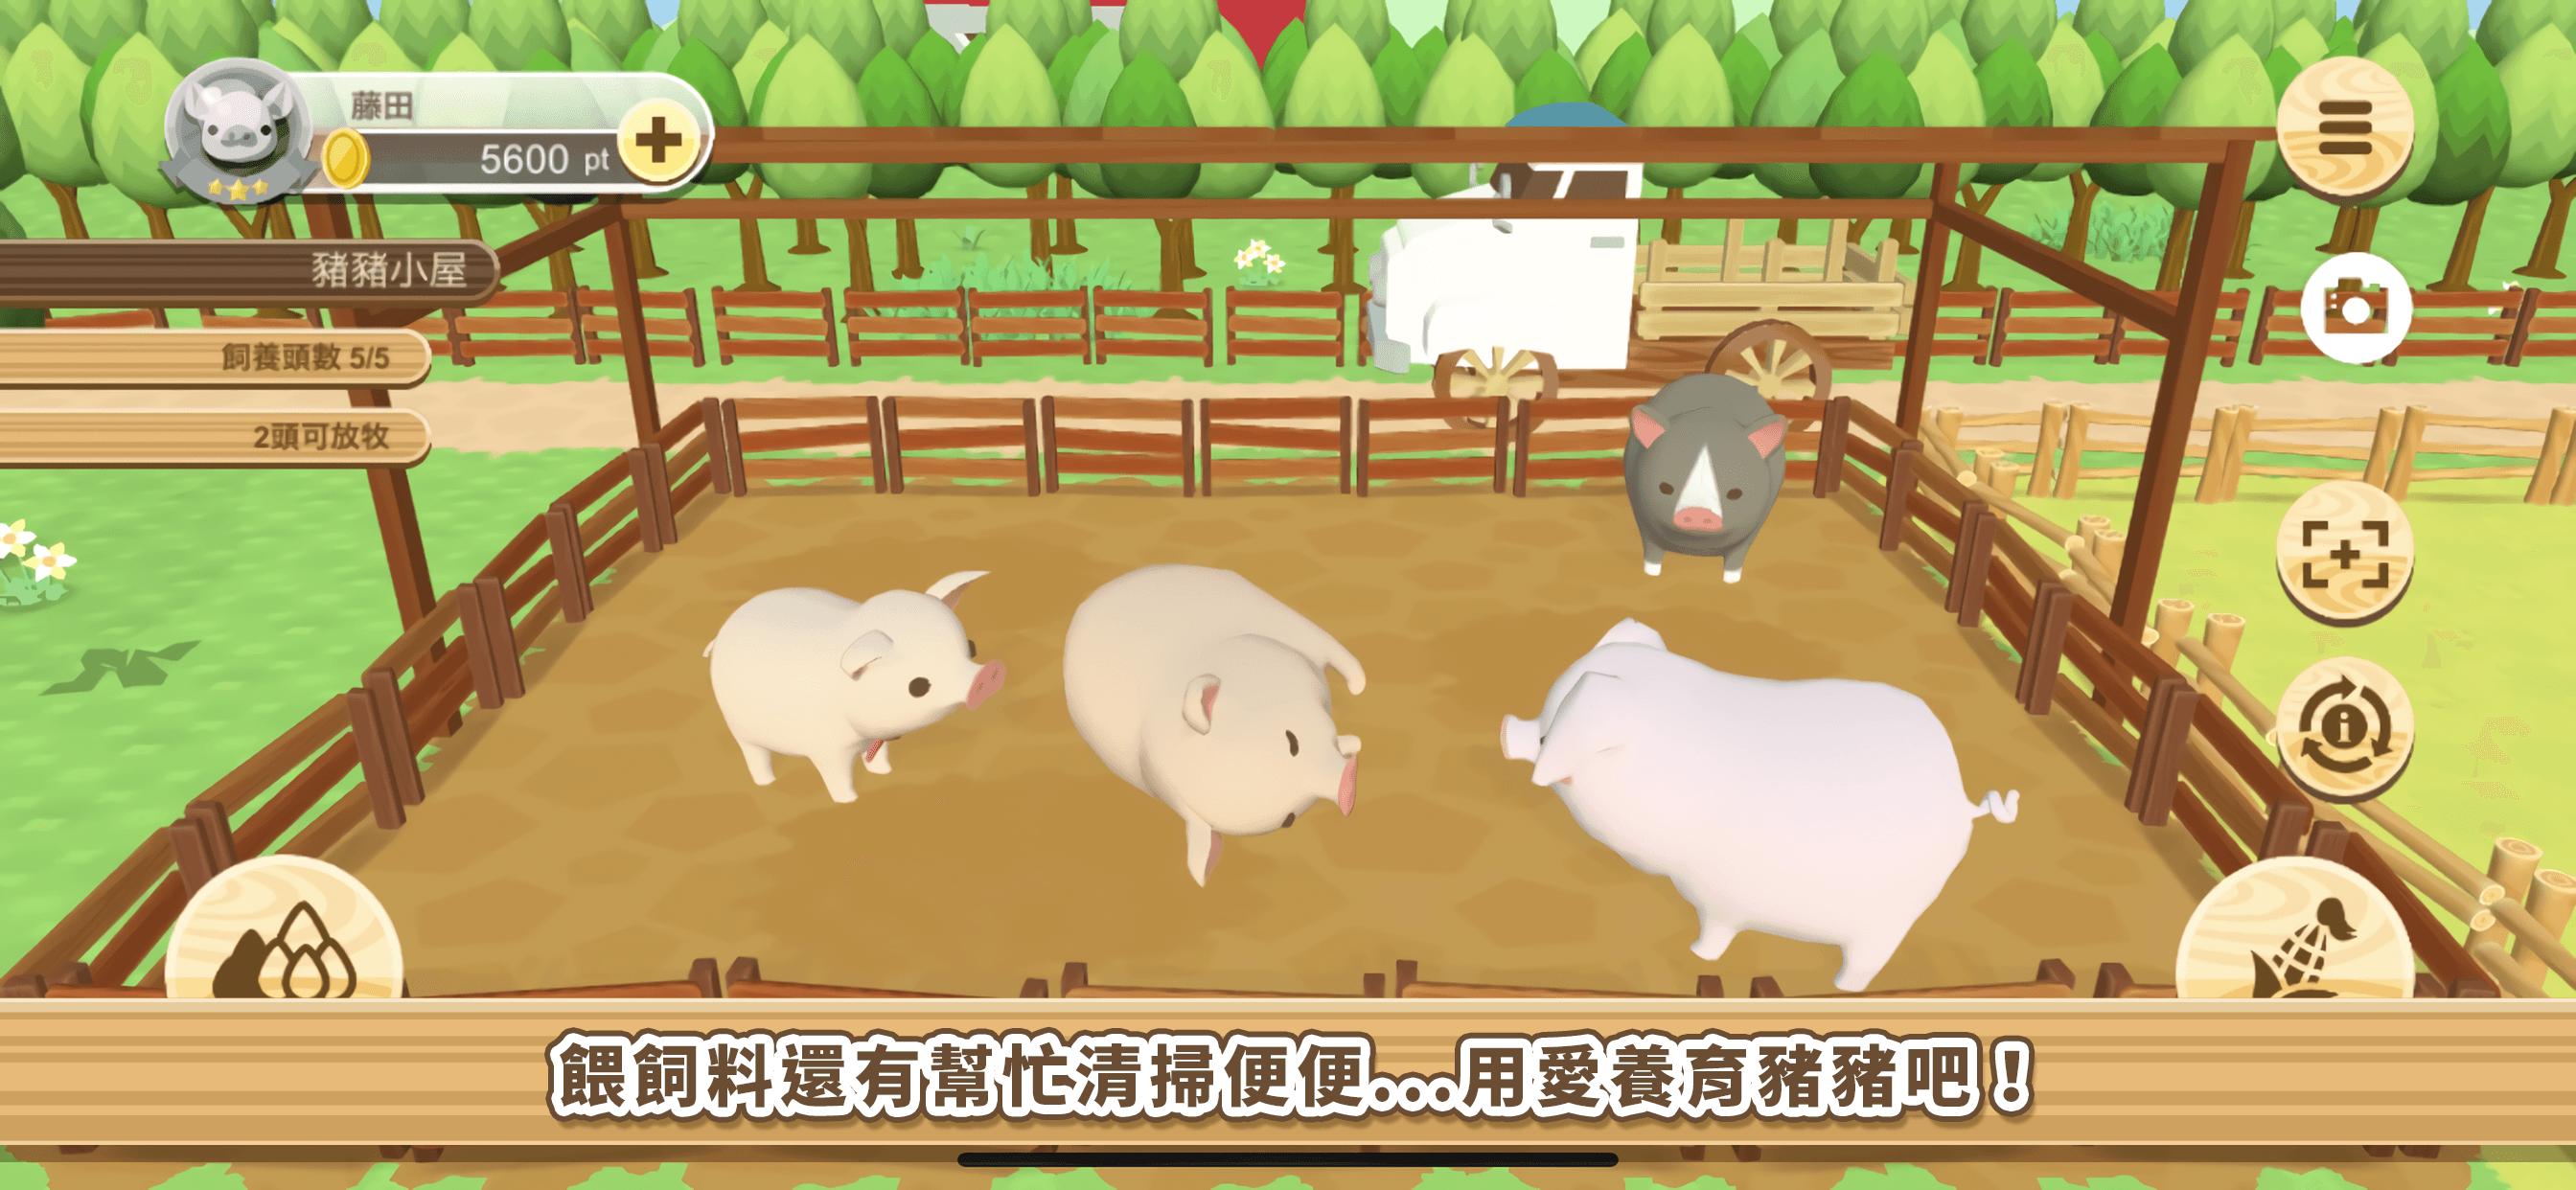 養豬場3D 4.03 Screenshot 2